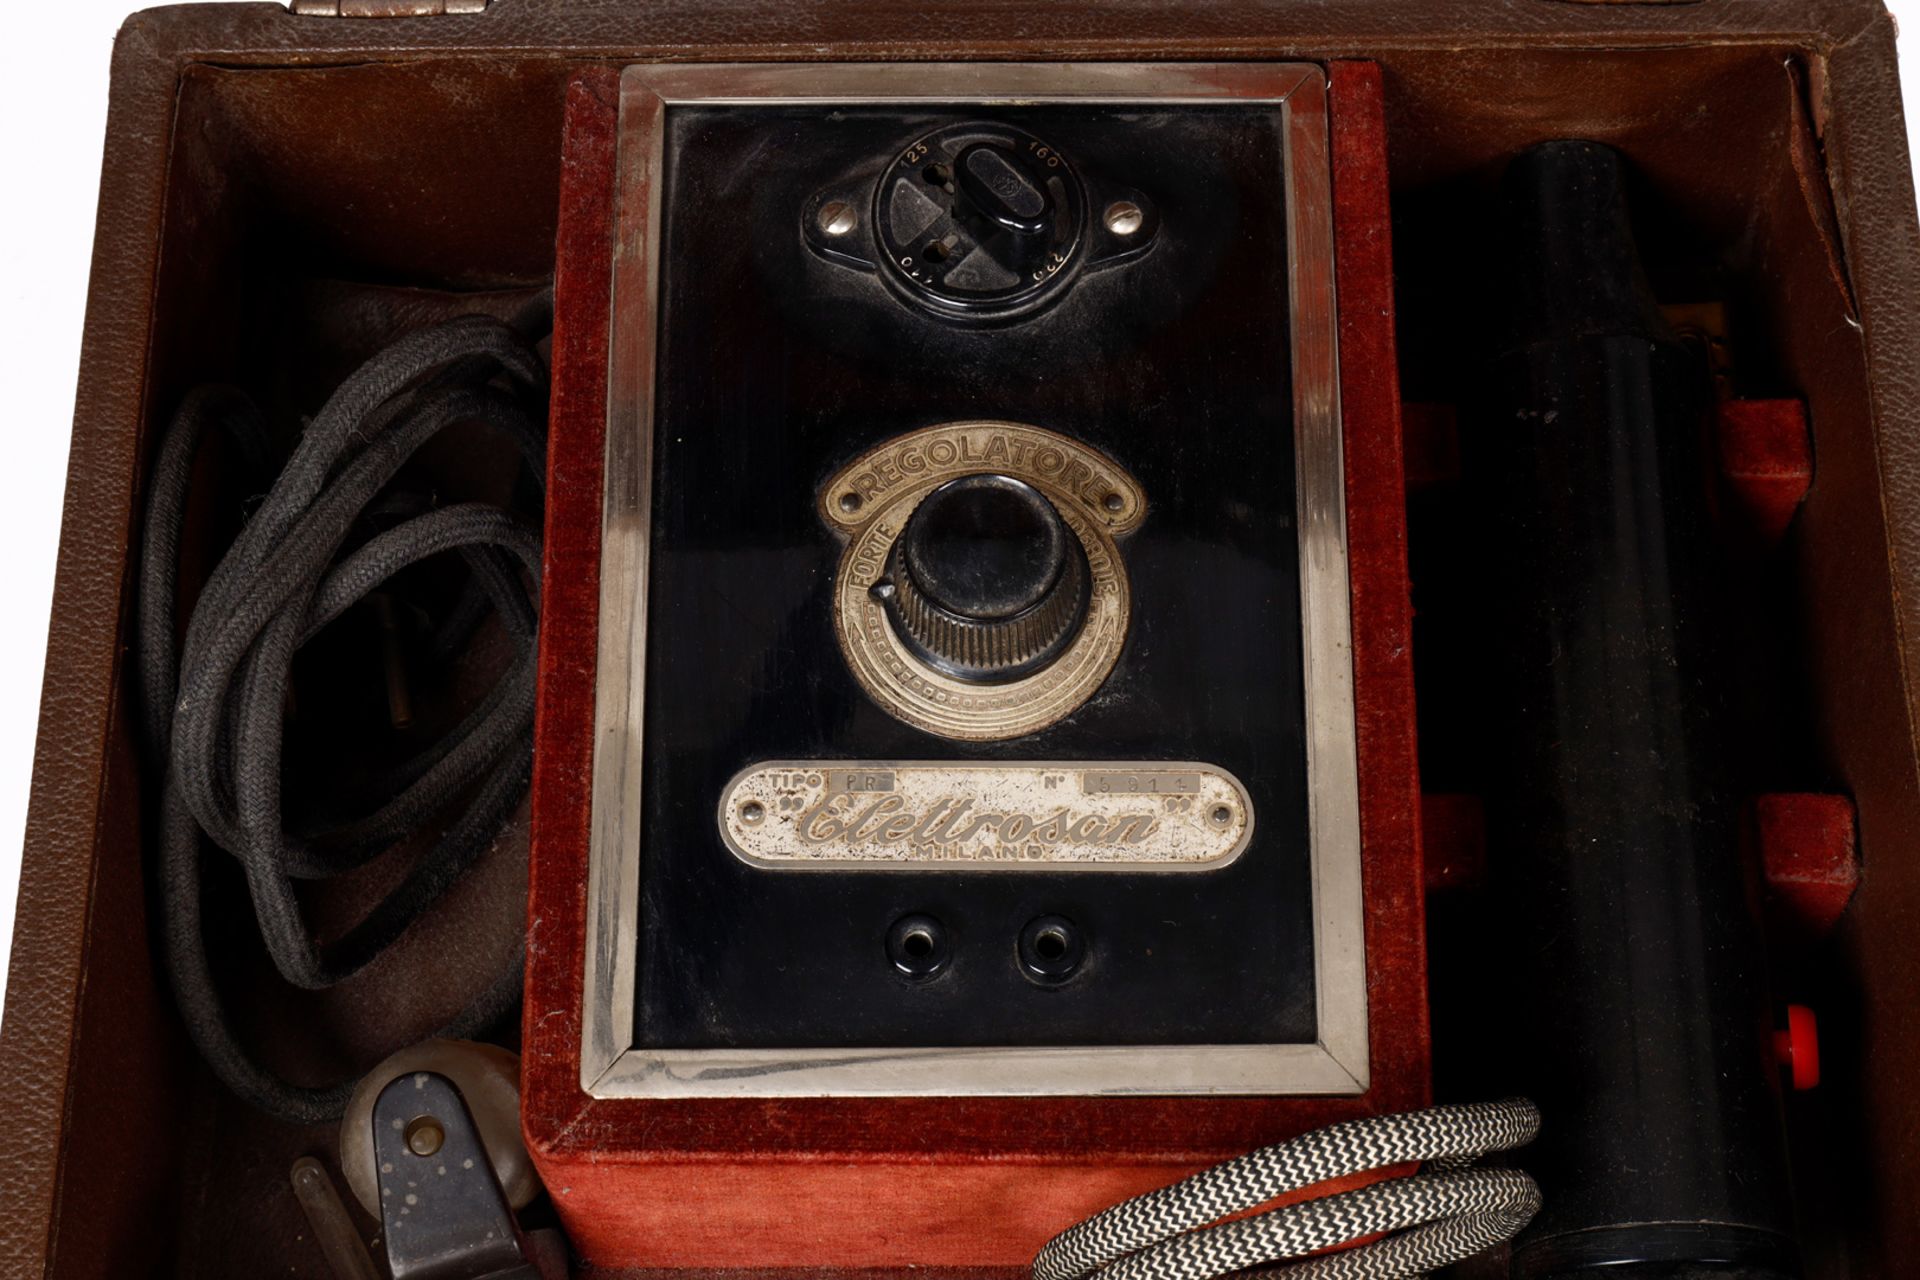 Medizinischer Elektrisierapparat ”Elettrosan”, PR 5914, Milano, in aufklappbarem Koffer, L 30 cm, - Image 3 of 5